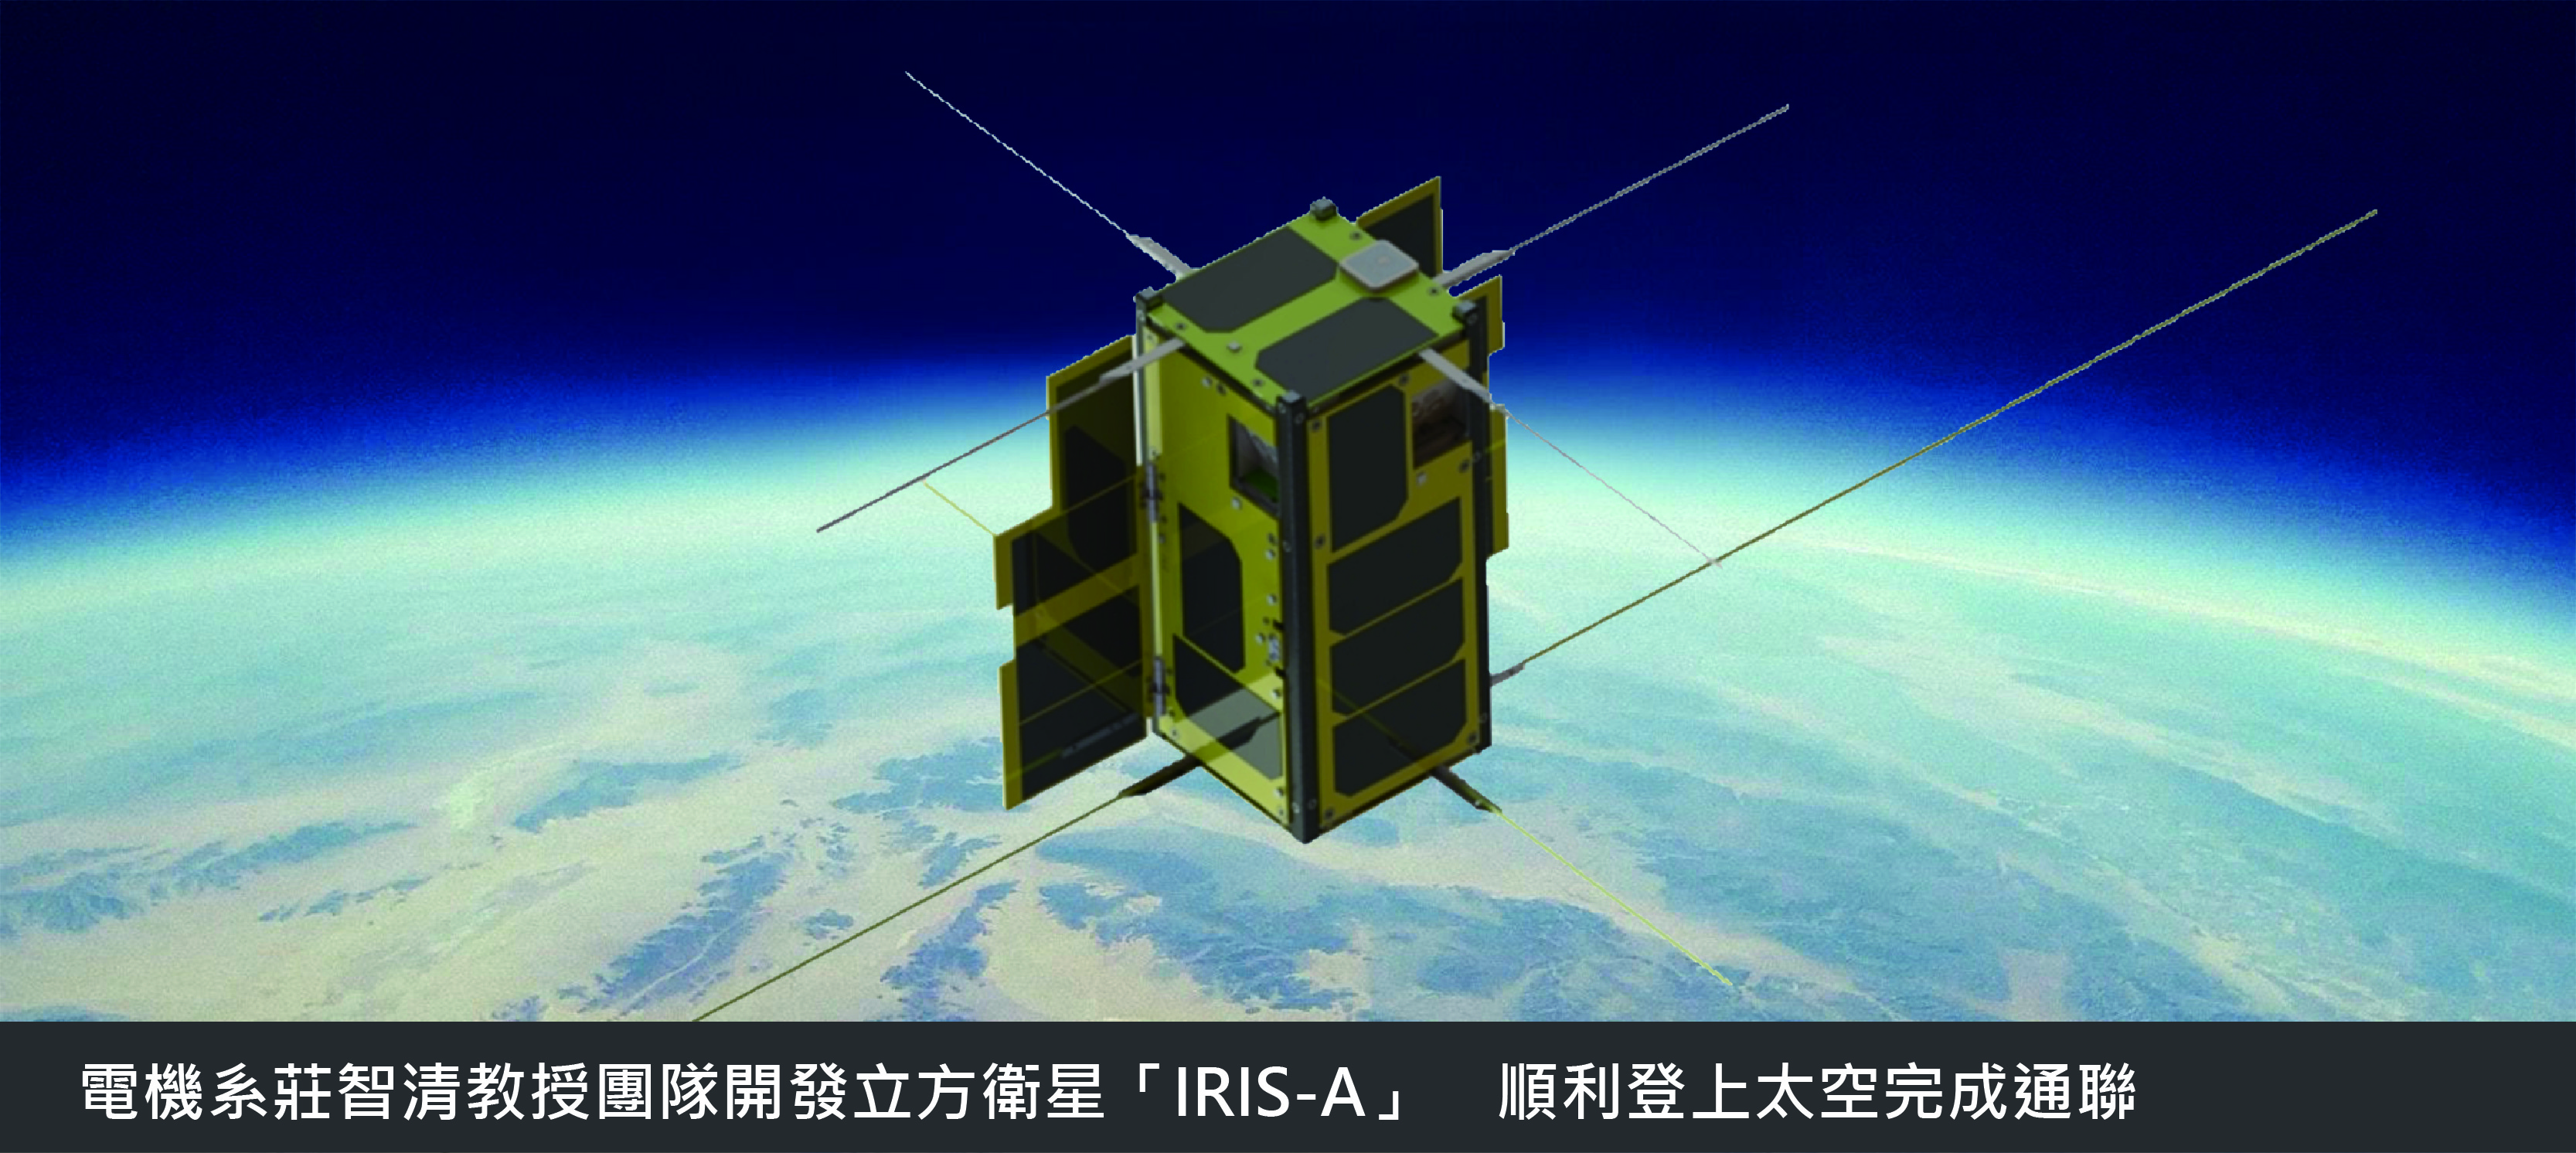 電機系莊智清教授團隊開發立方衛星「IRIS-A」　順利登上太空完成通聯